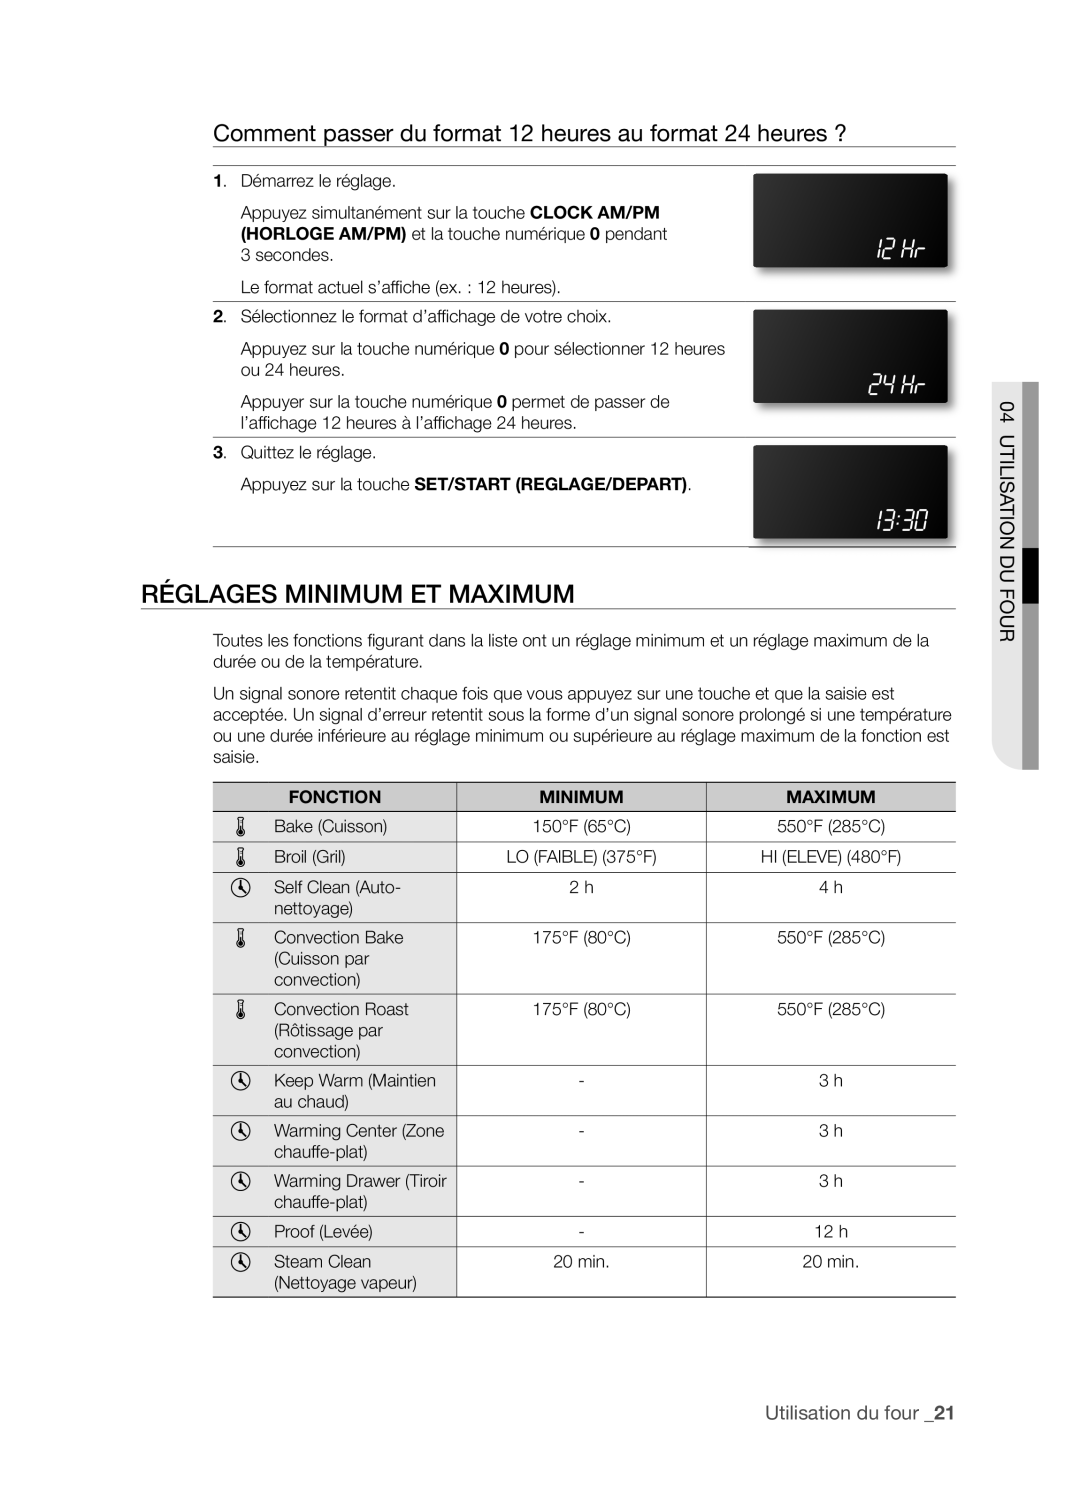 Samsung FTQ386LWX user manual RéGLAGES MINIMUM ET MAXIMUM, Utilisation Du Four, Utilisation du four _21 